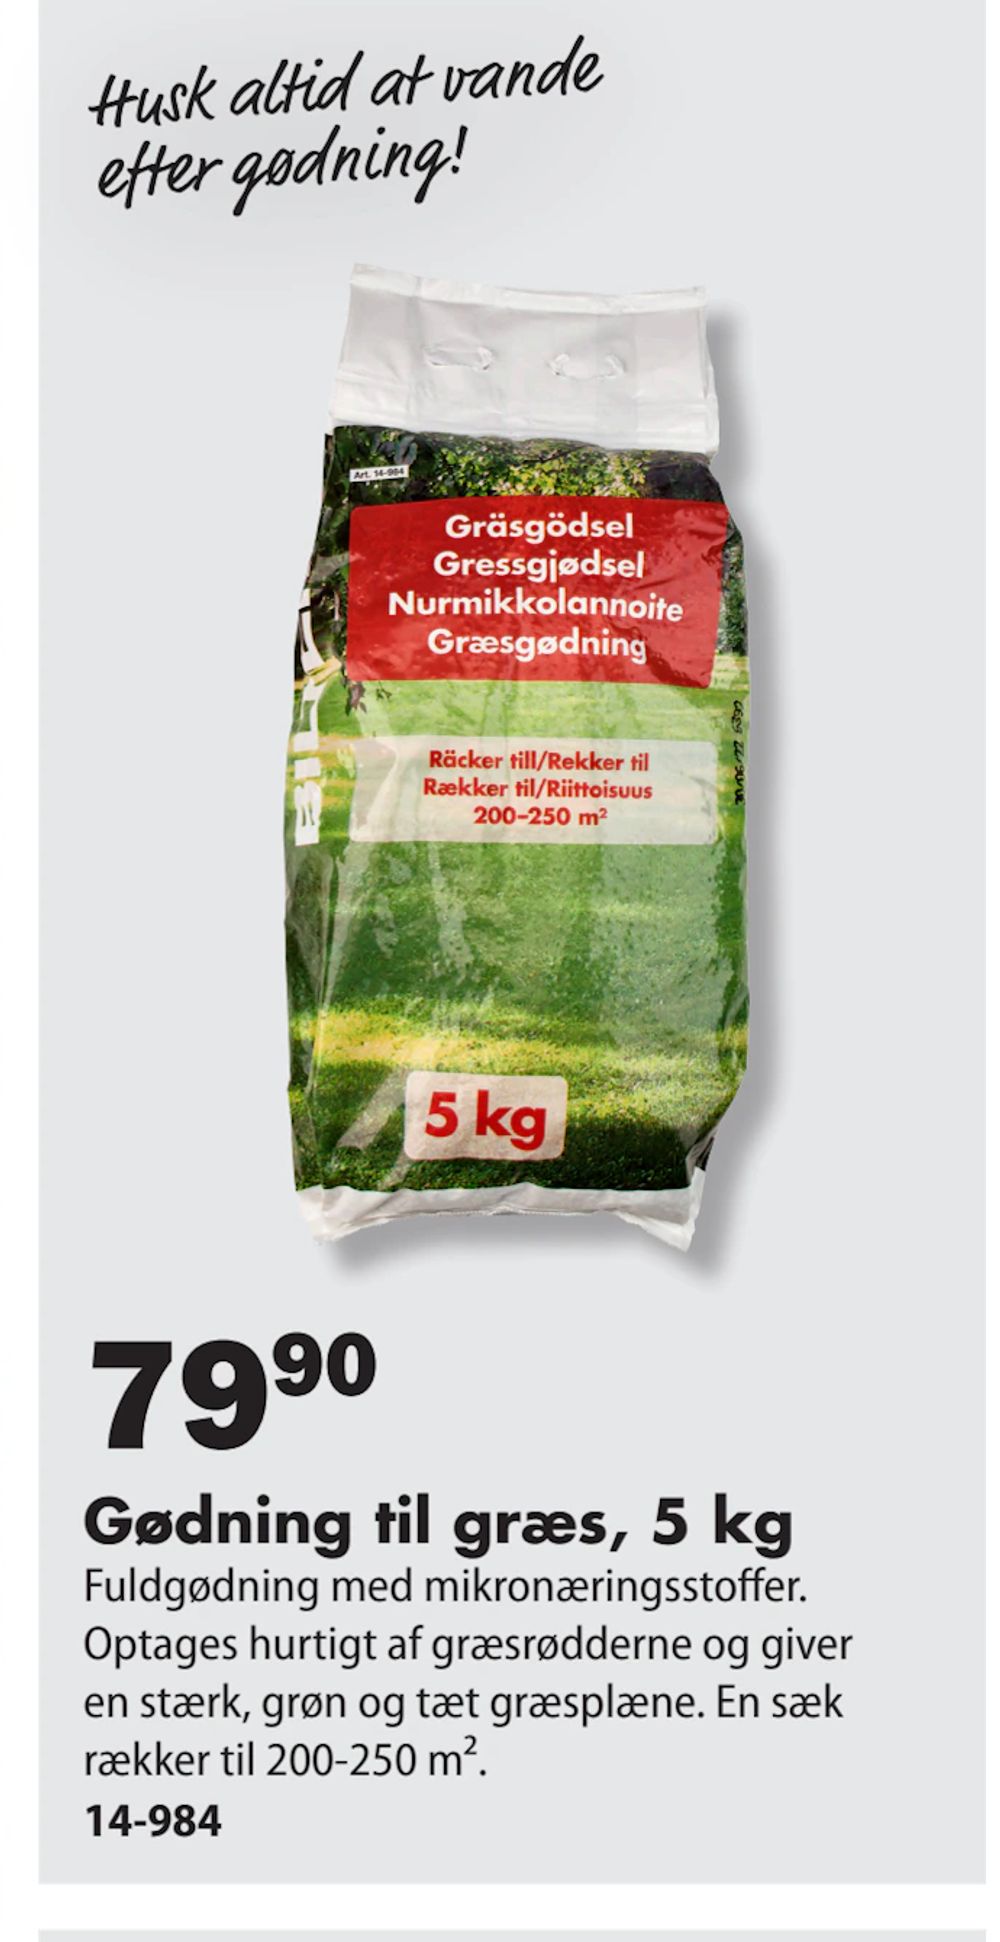 Tilbud på Gødning til græs, 5 kg fra Biltema til 79,90 kr.